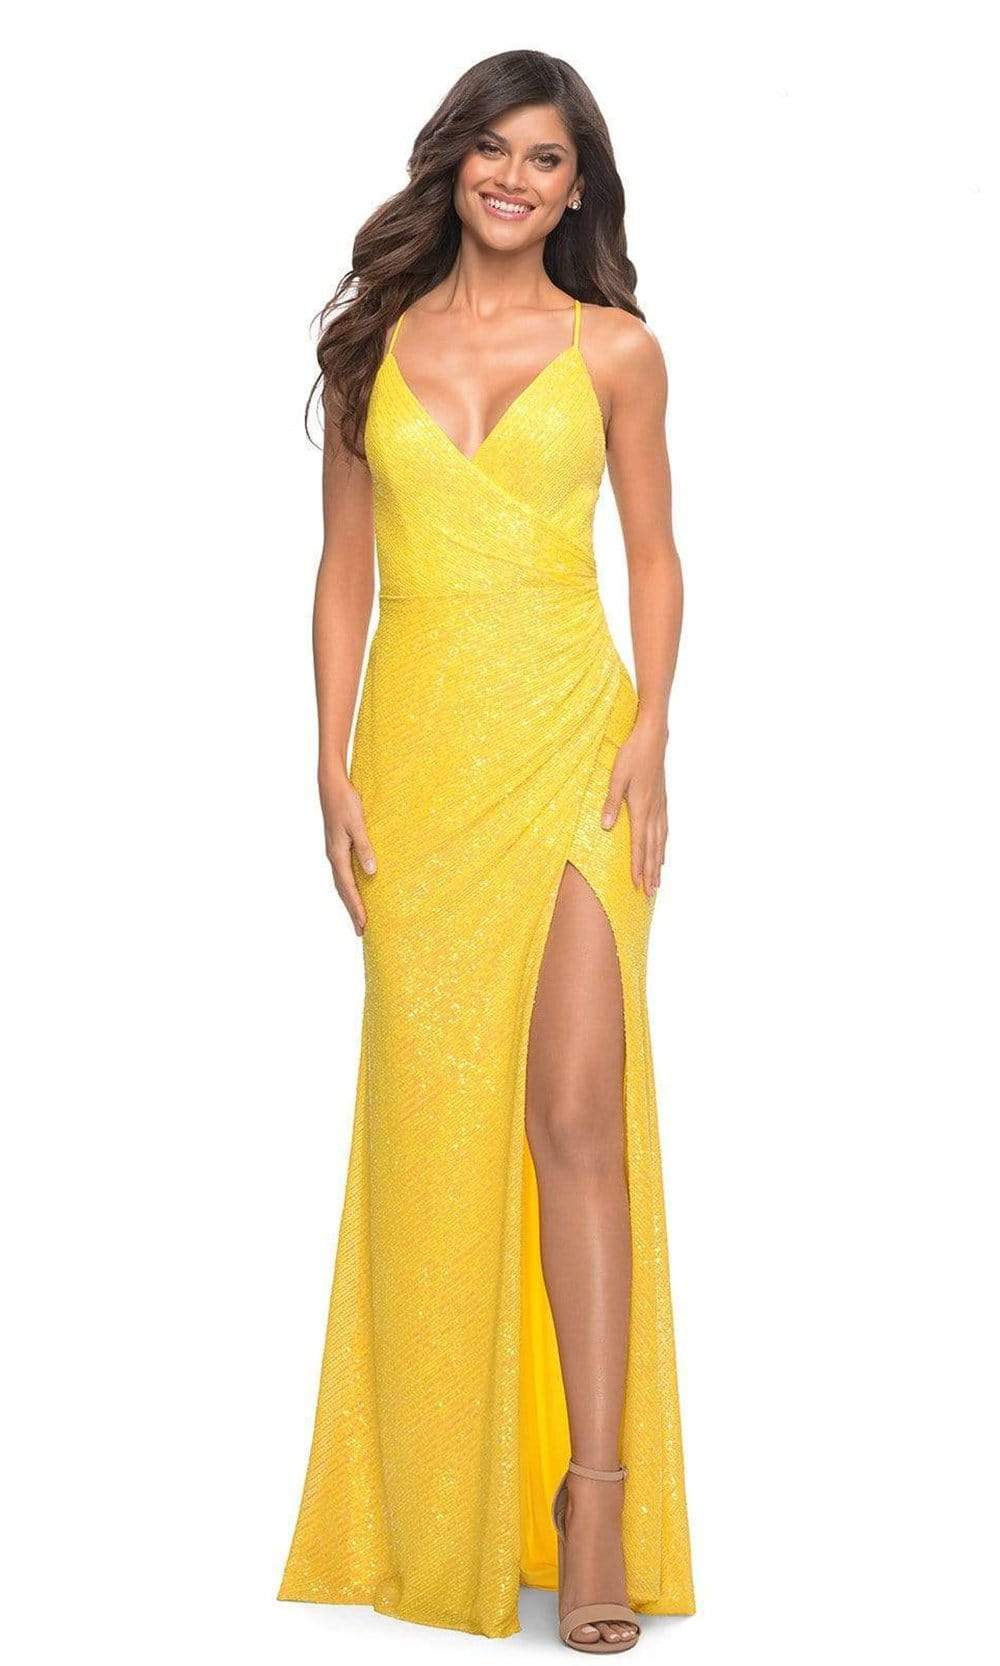 La Femme - 30620 Draped High Slit Sequin Gown
